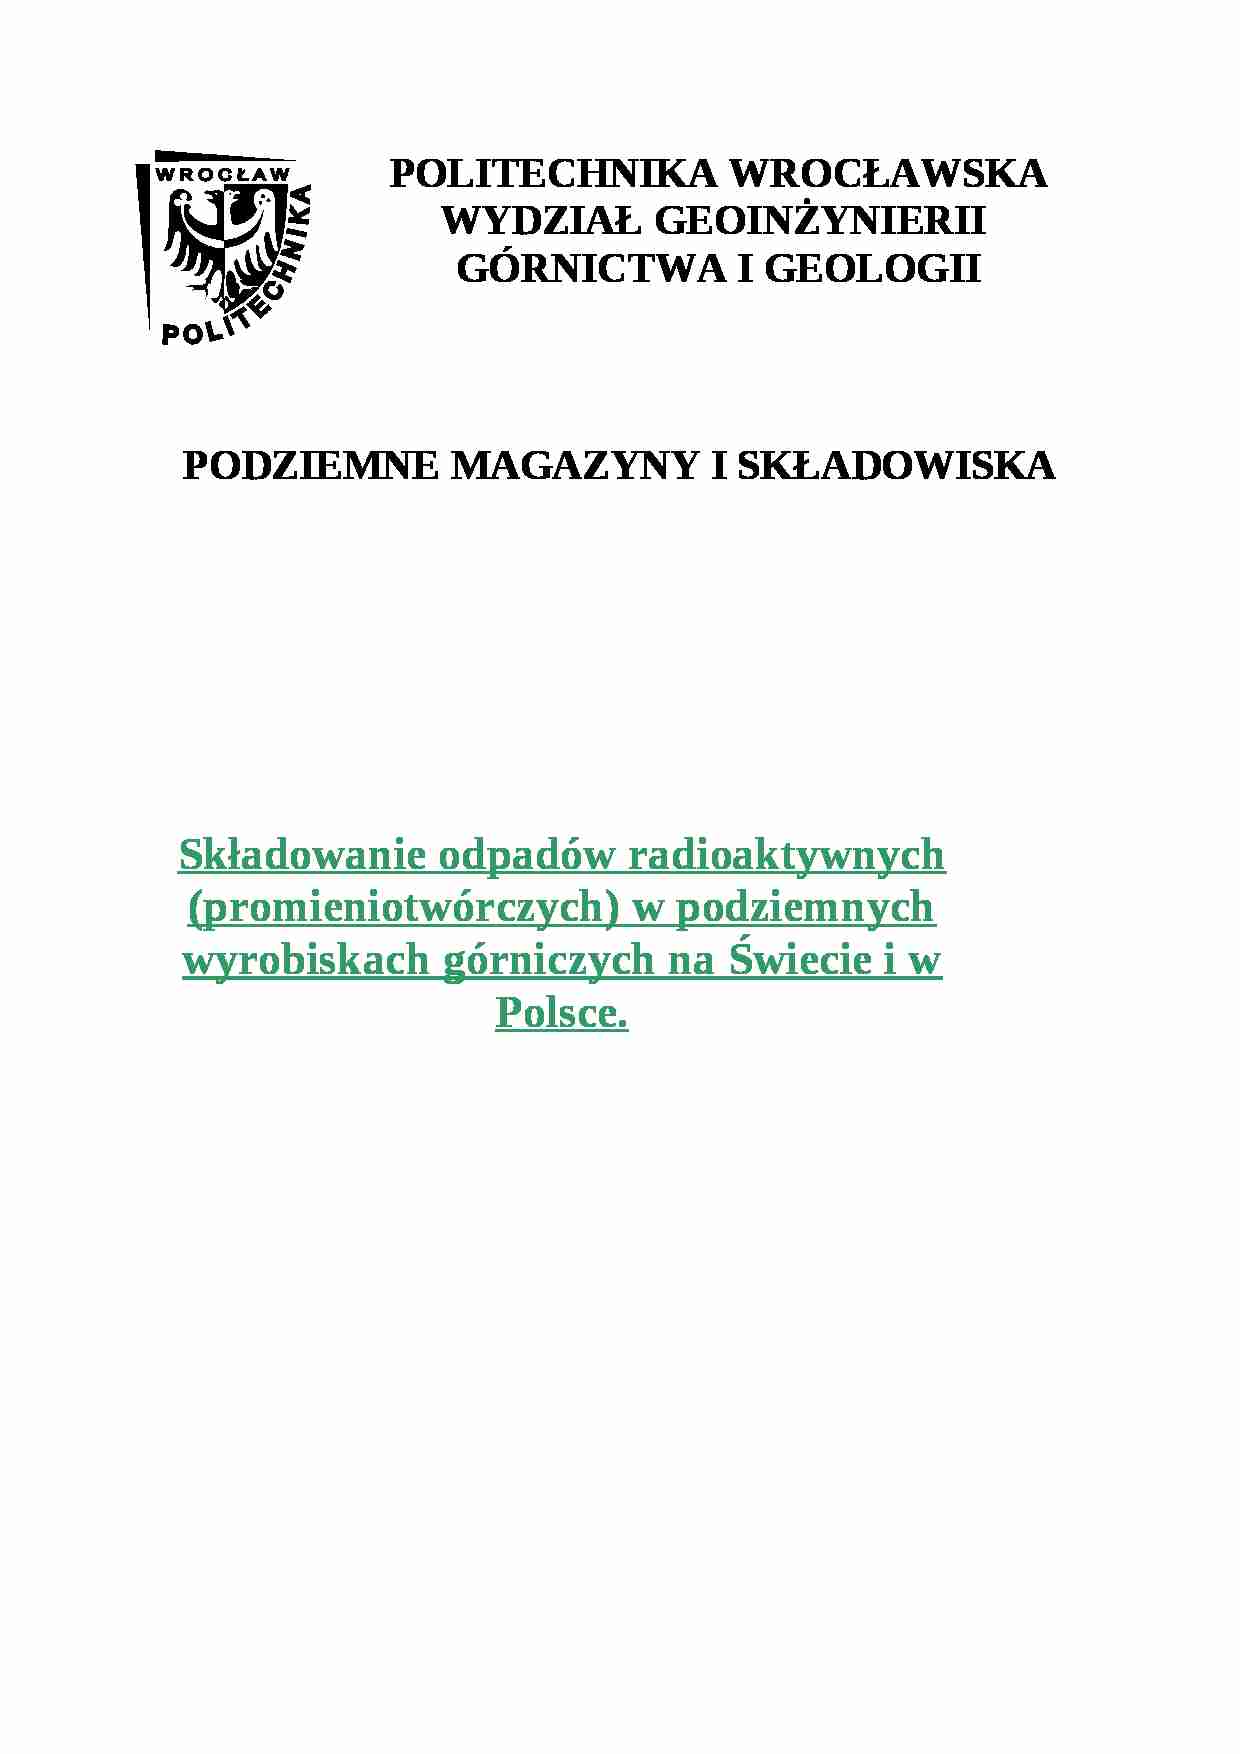 Składowanie odpadów radioaktywnych w podziemnych wyrobiskach górniczych na świecie i w Polsce - omówienie - strona 1